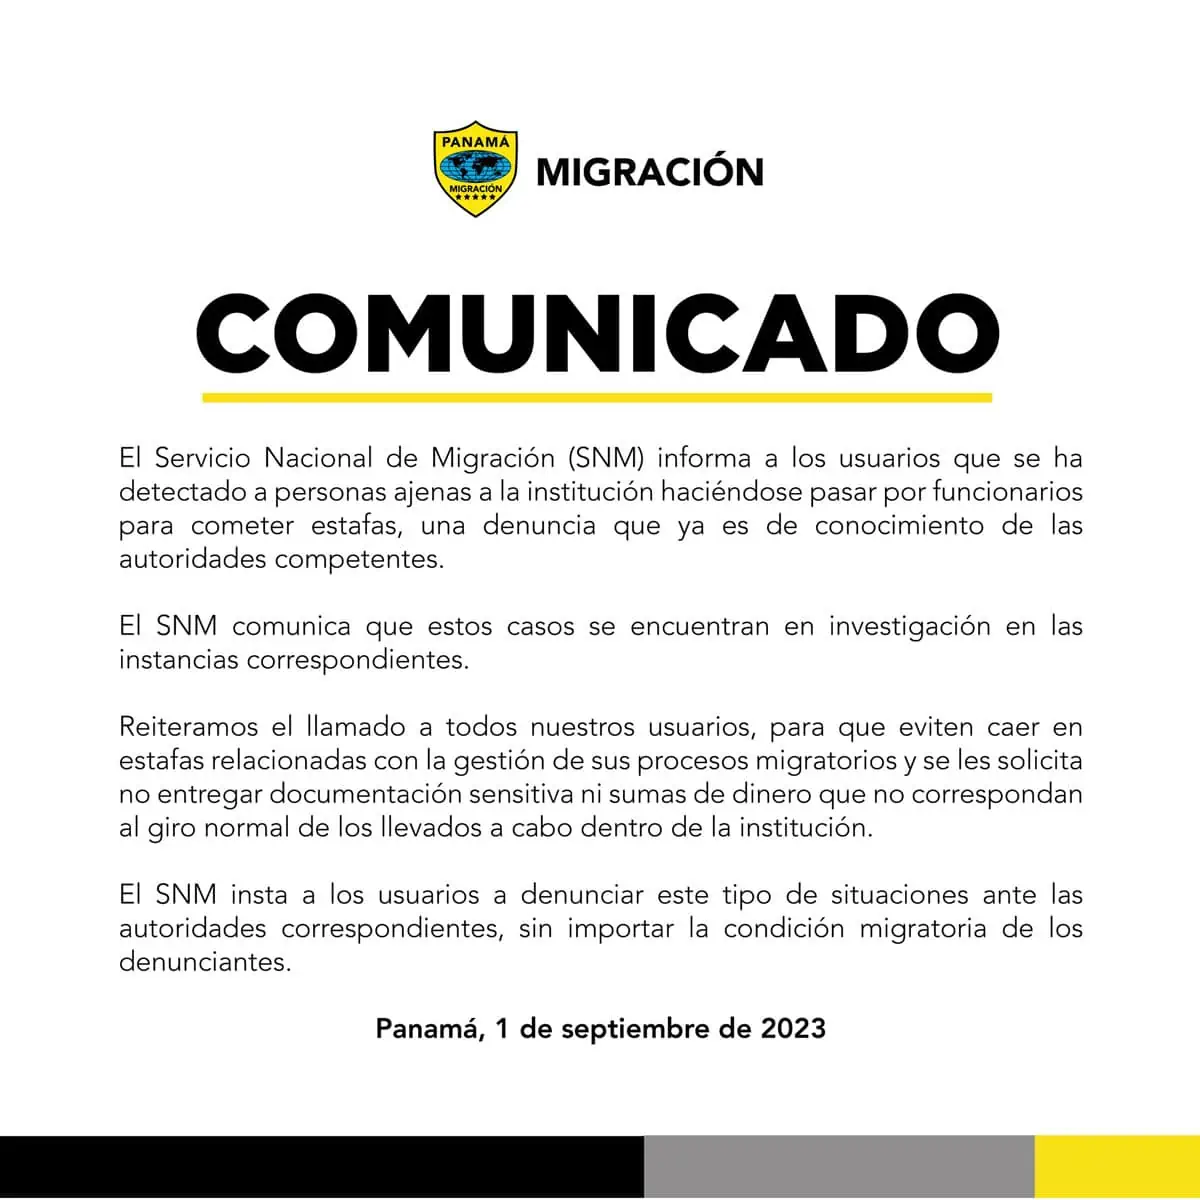 Comunicado de Advertencia de la Embajada de Panamá 4 de Septiembre